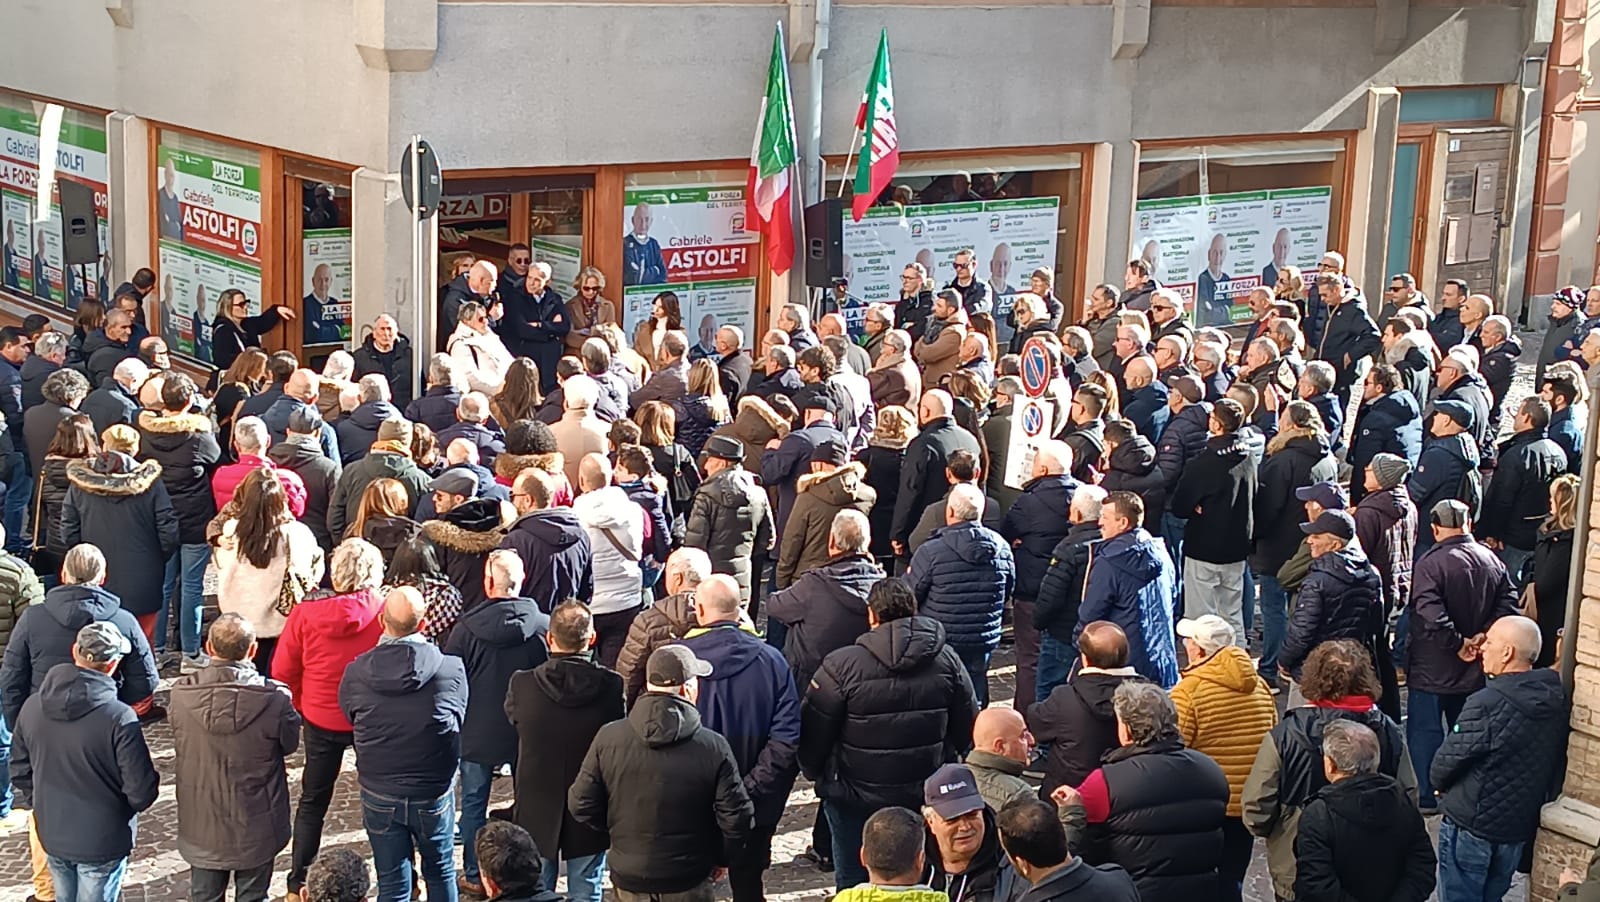 Abruzzo verso le regionali: inaugurata ad Atri la sede del Candidato Gabriele Astolfi(Forza Italia) 